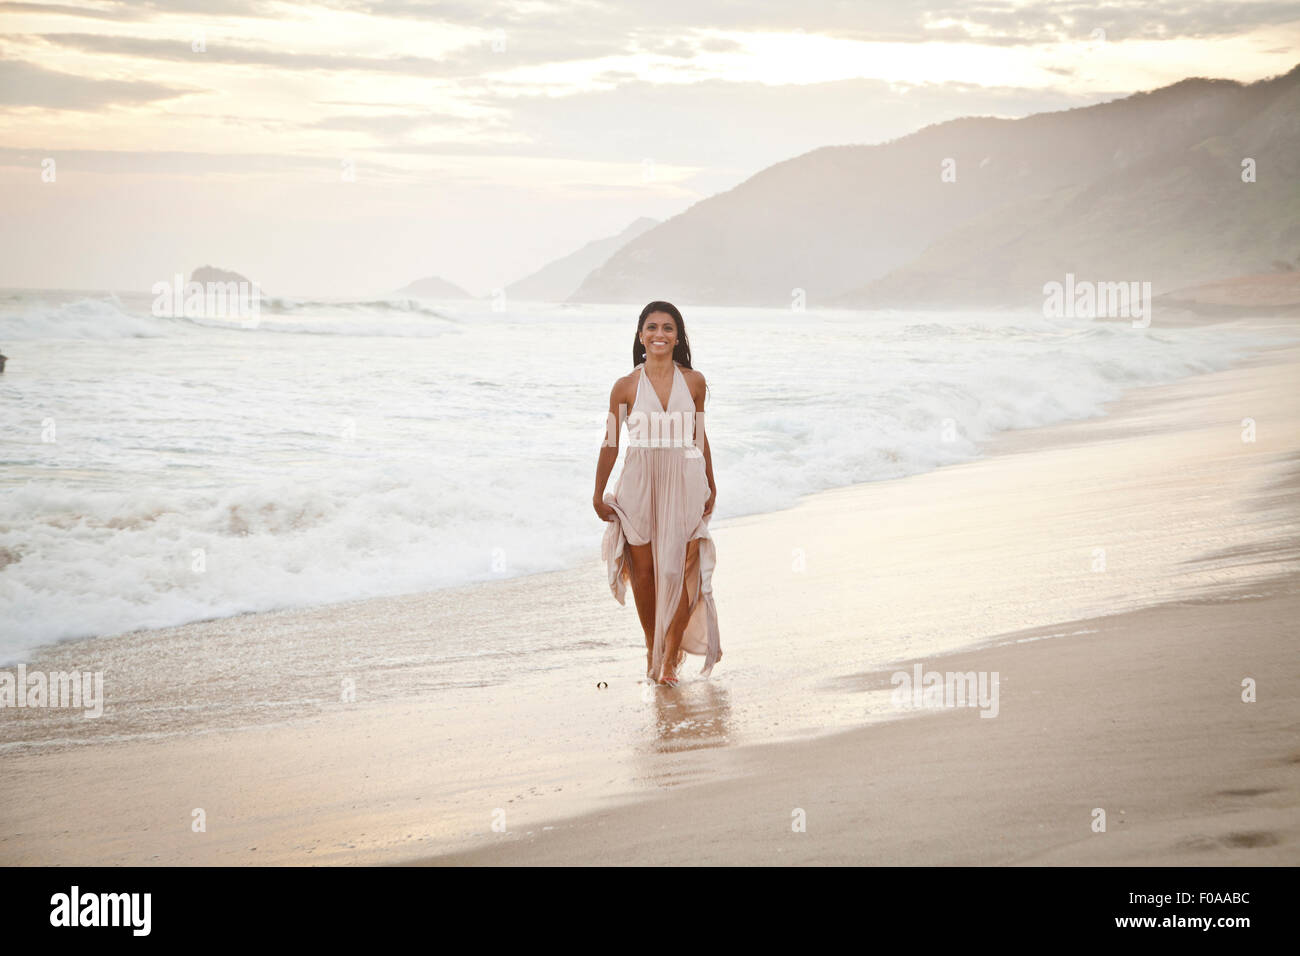 Mitte der erwachsenen Frau am Strand entlang zu laufen Stockfoto